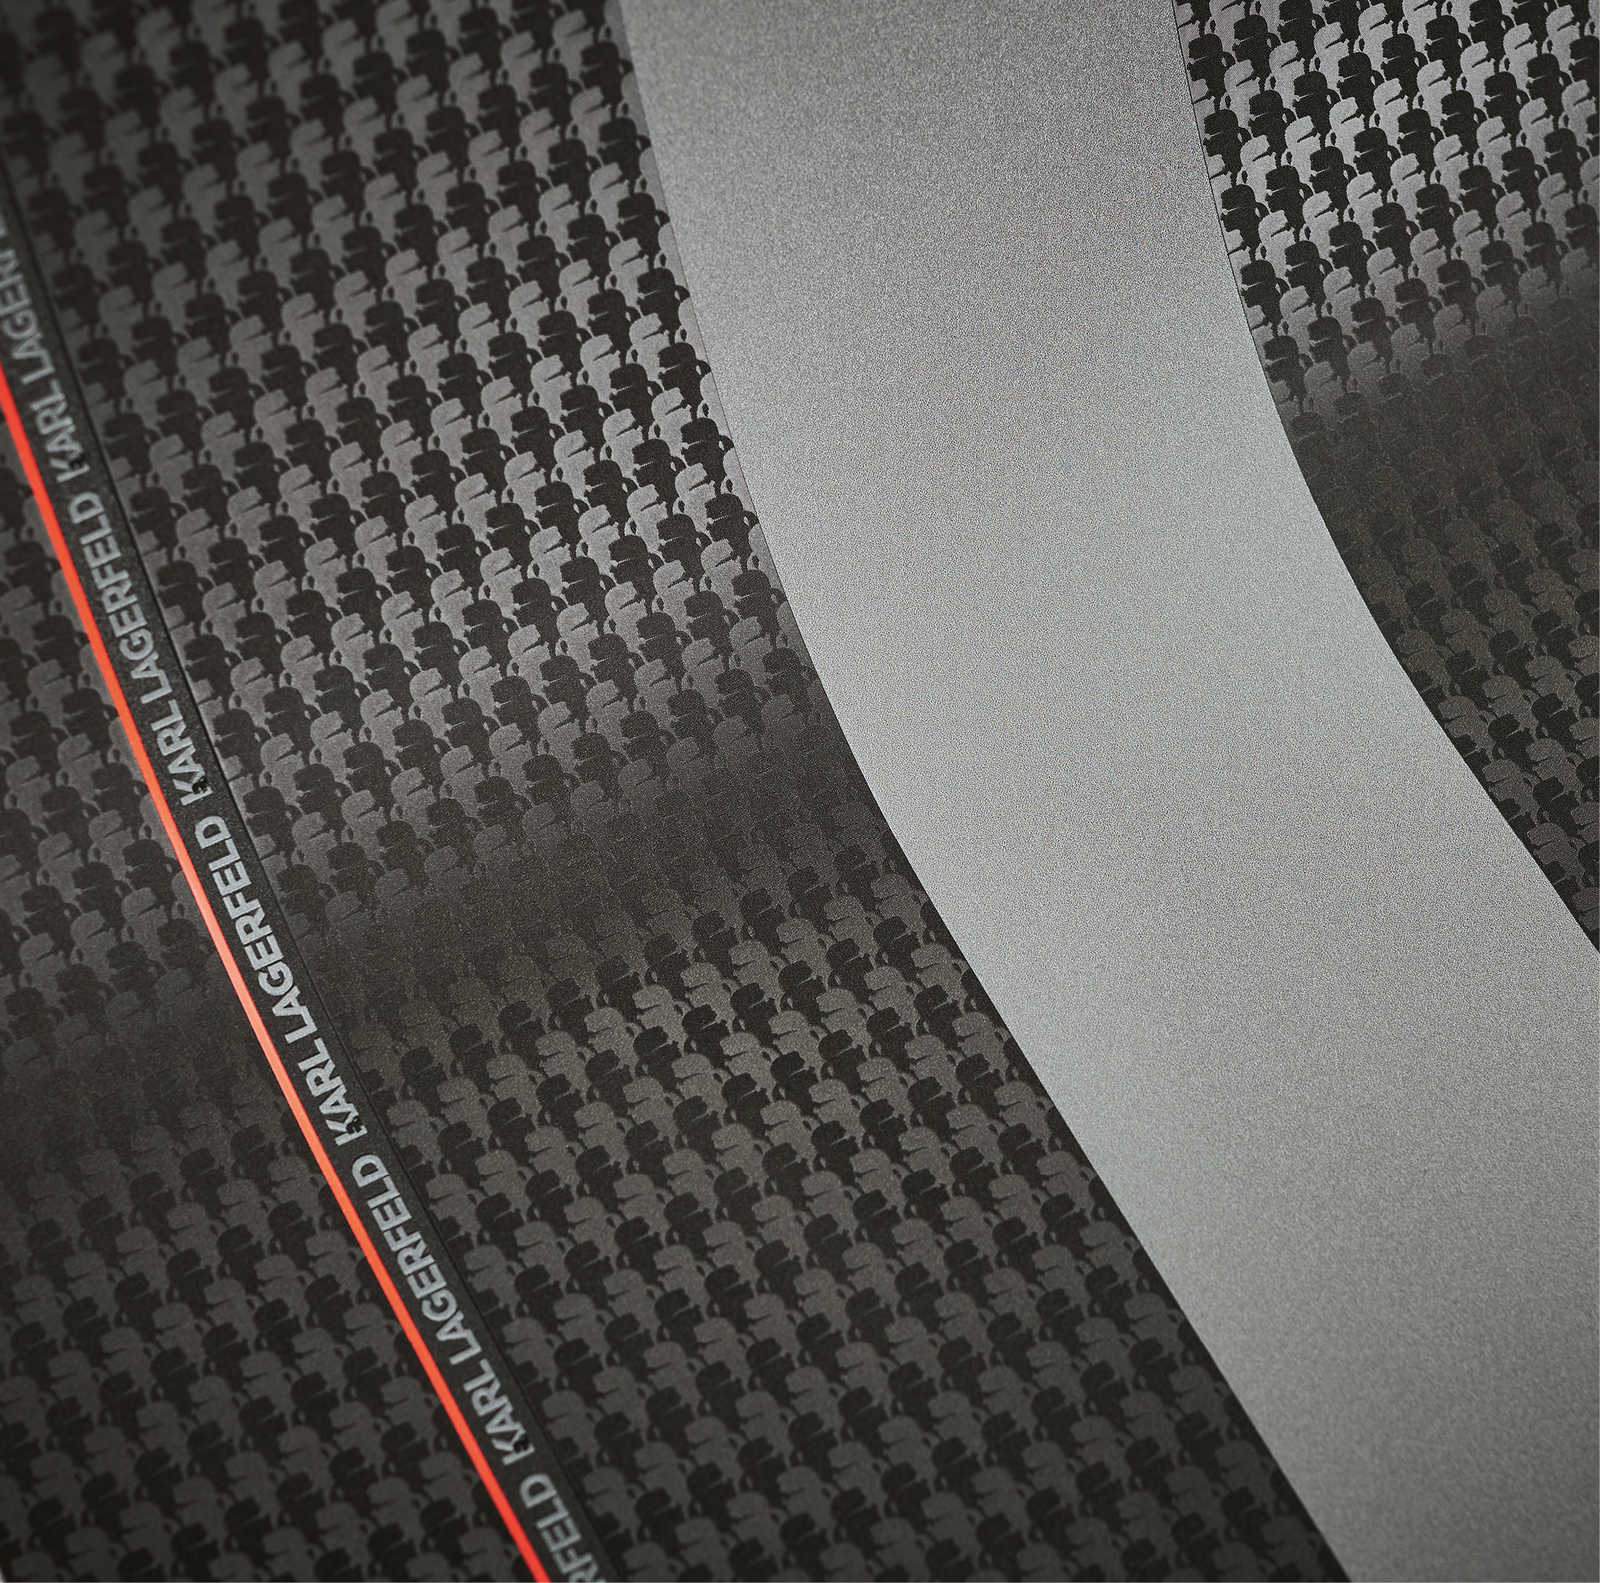             Karl LAGERFELD gestreept behang met textuureffect - grijs, zwart
        